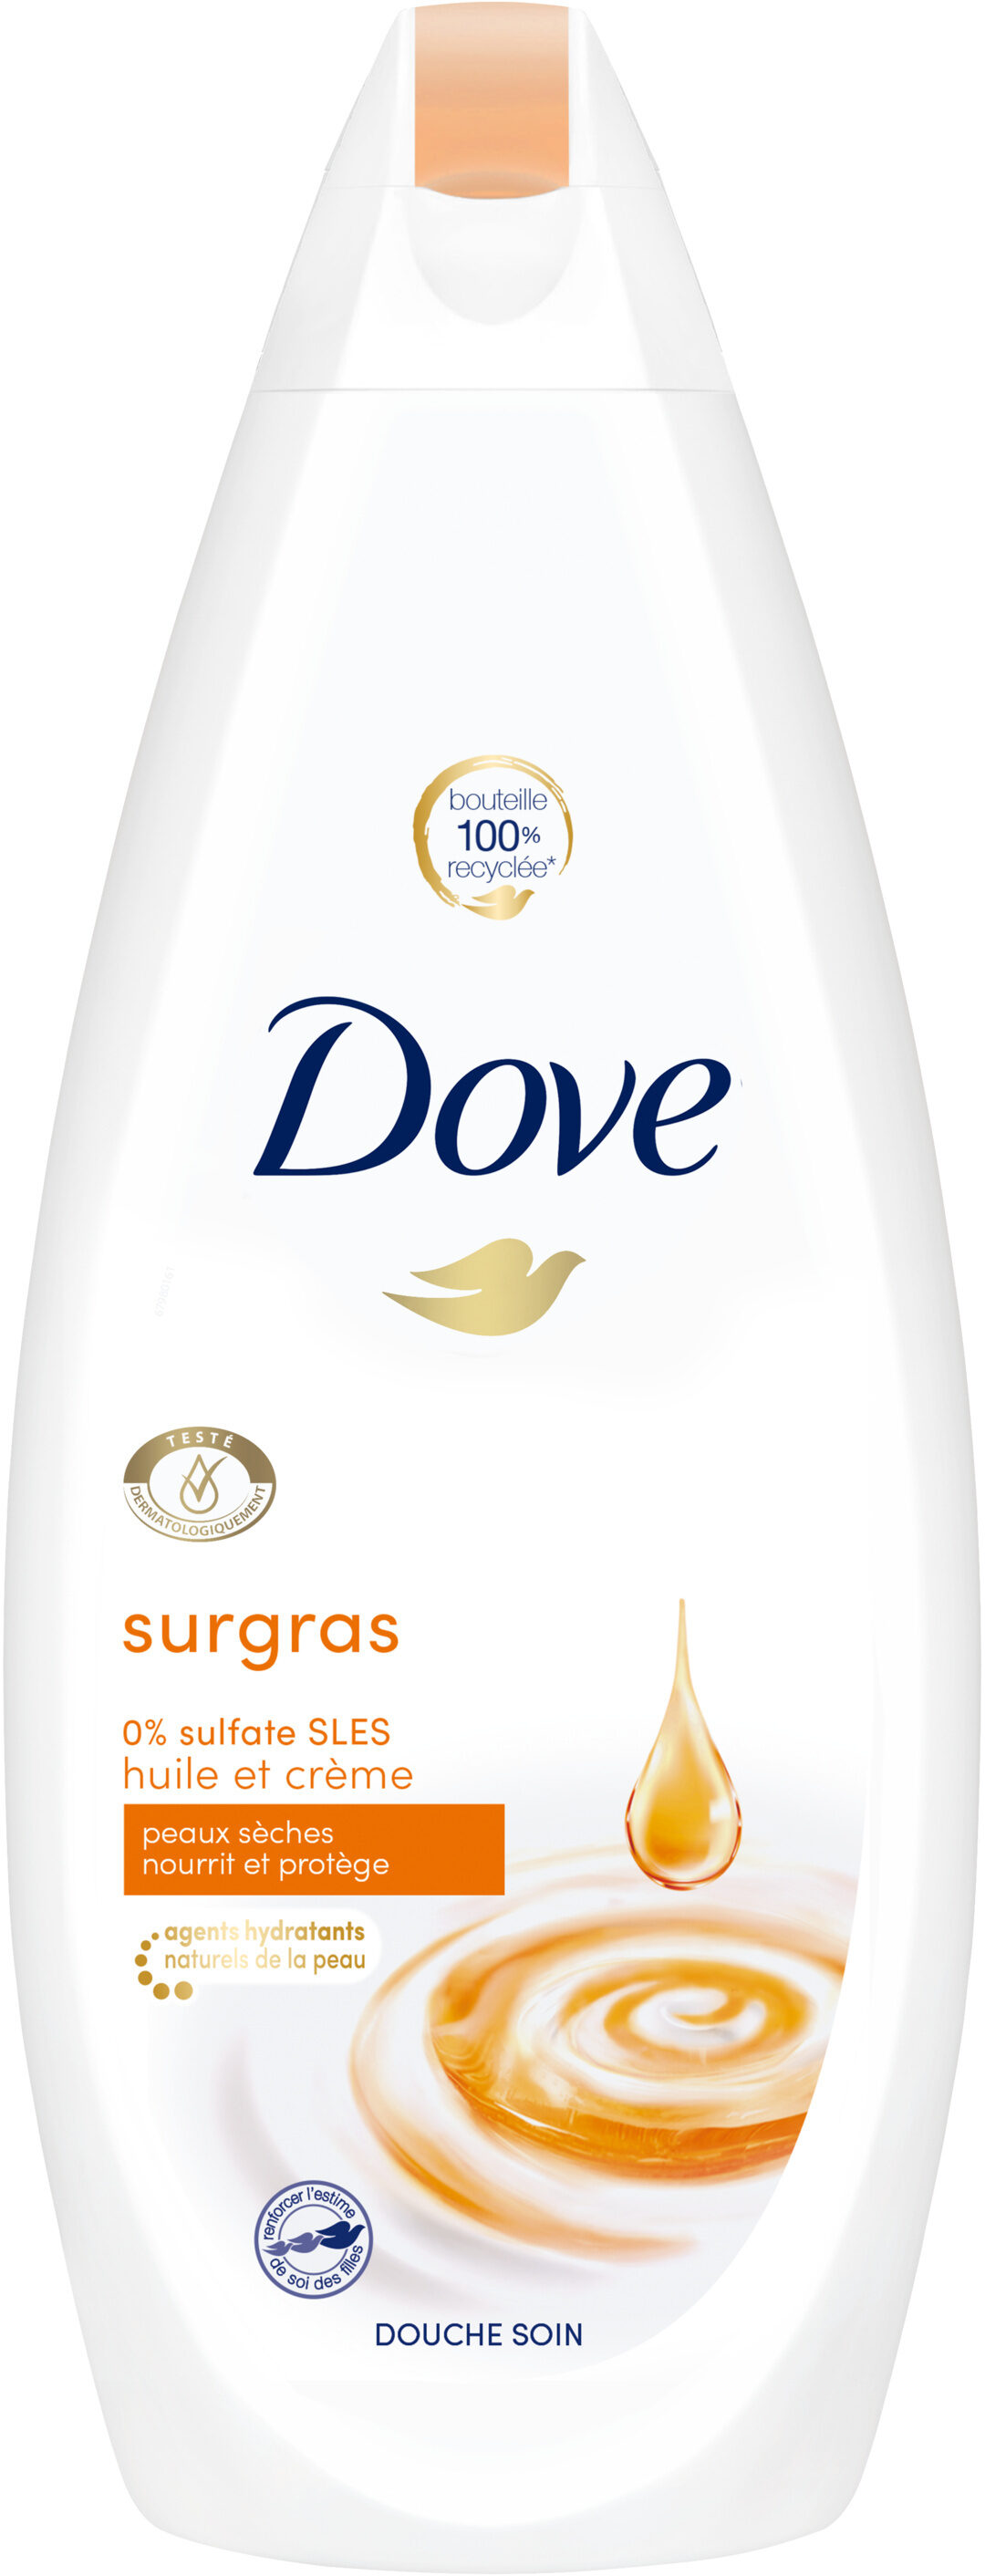 Dove Gel Douche Surgras Huile & Crème 750ml - Product - fr